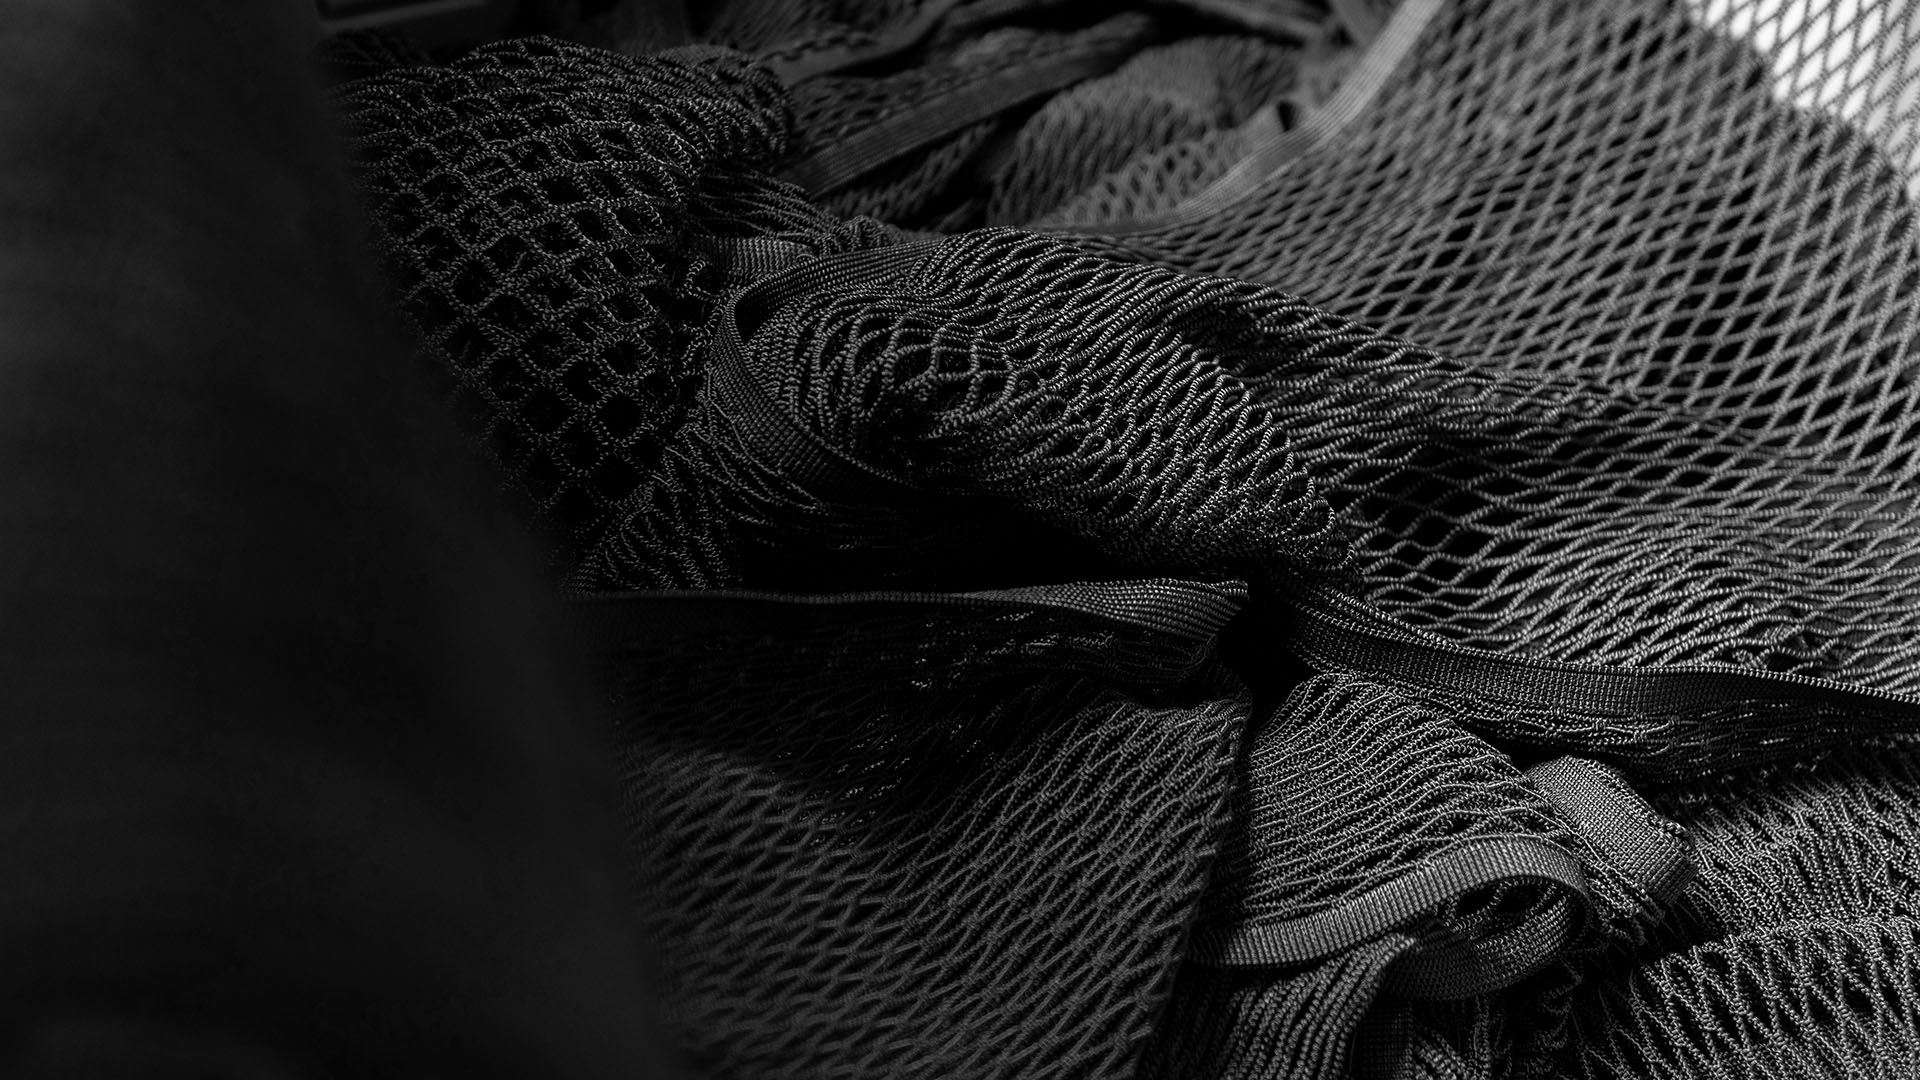 Noelle-und-Pepin Netze auf Metallrahmen Netz-Header-Metallrahmen Textilröhrchen